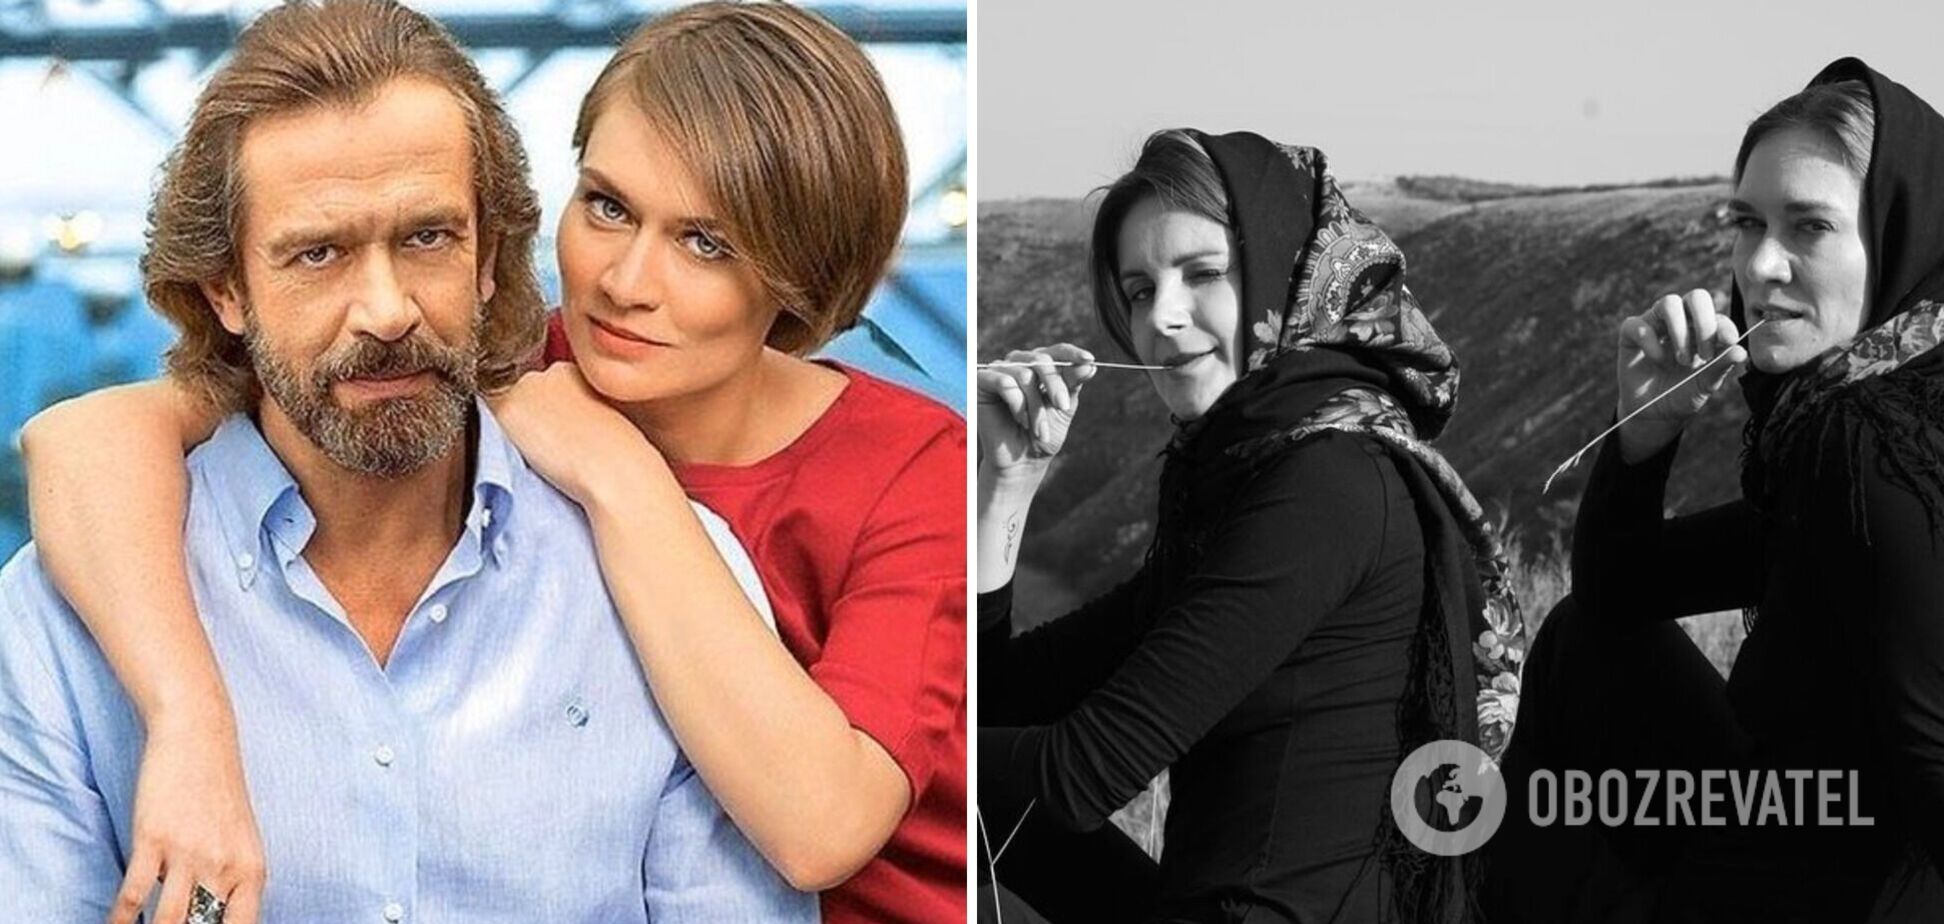 Дочь пропагандиста Машкова выложила в сеть совместные фото с сестрой Зеленской